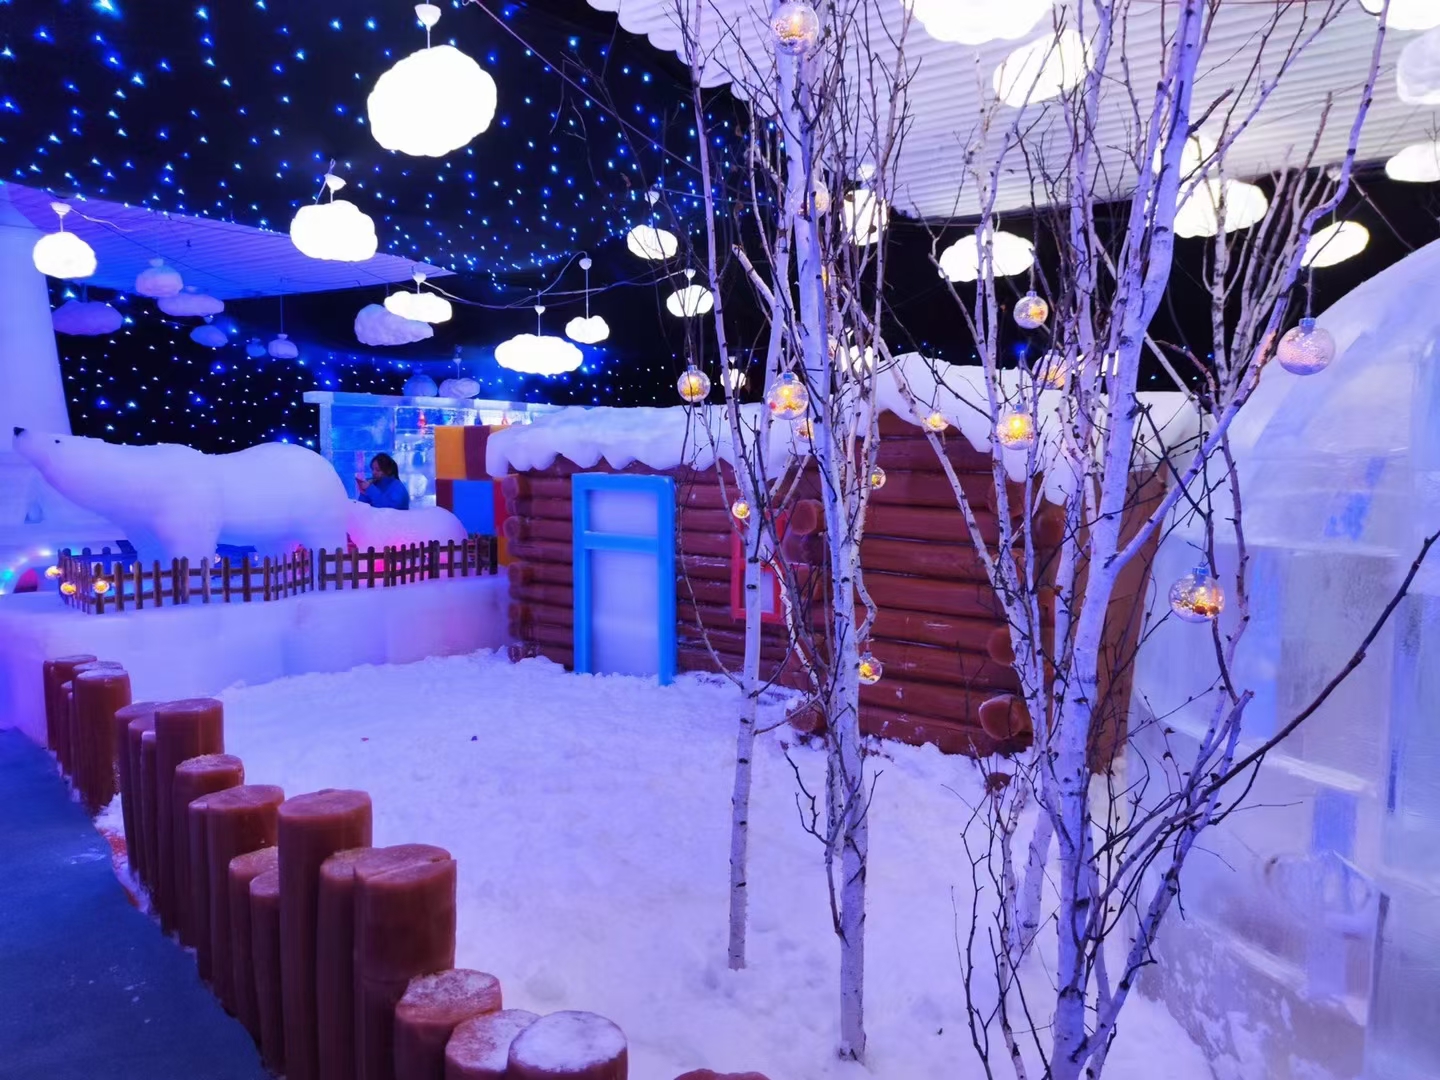 冰雪王国冰雕展活动方案 冰雪冰雕主题乐园 厂家供应冰雕展